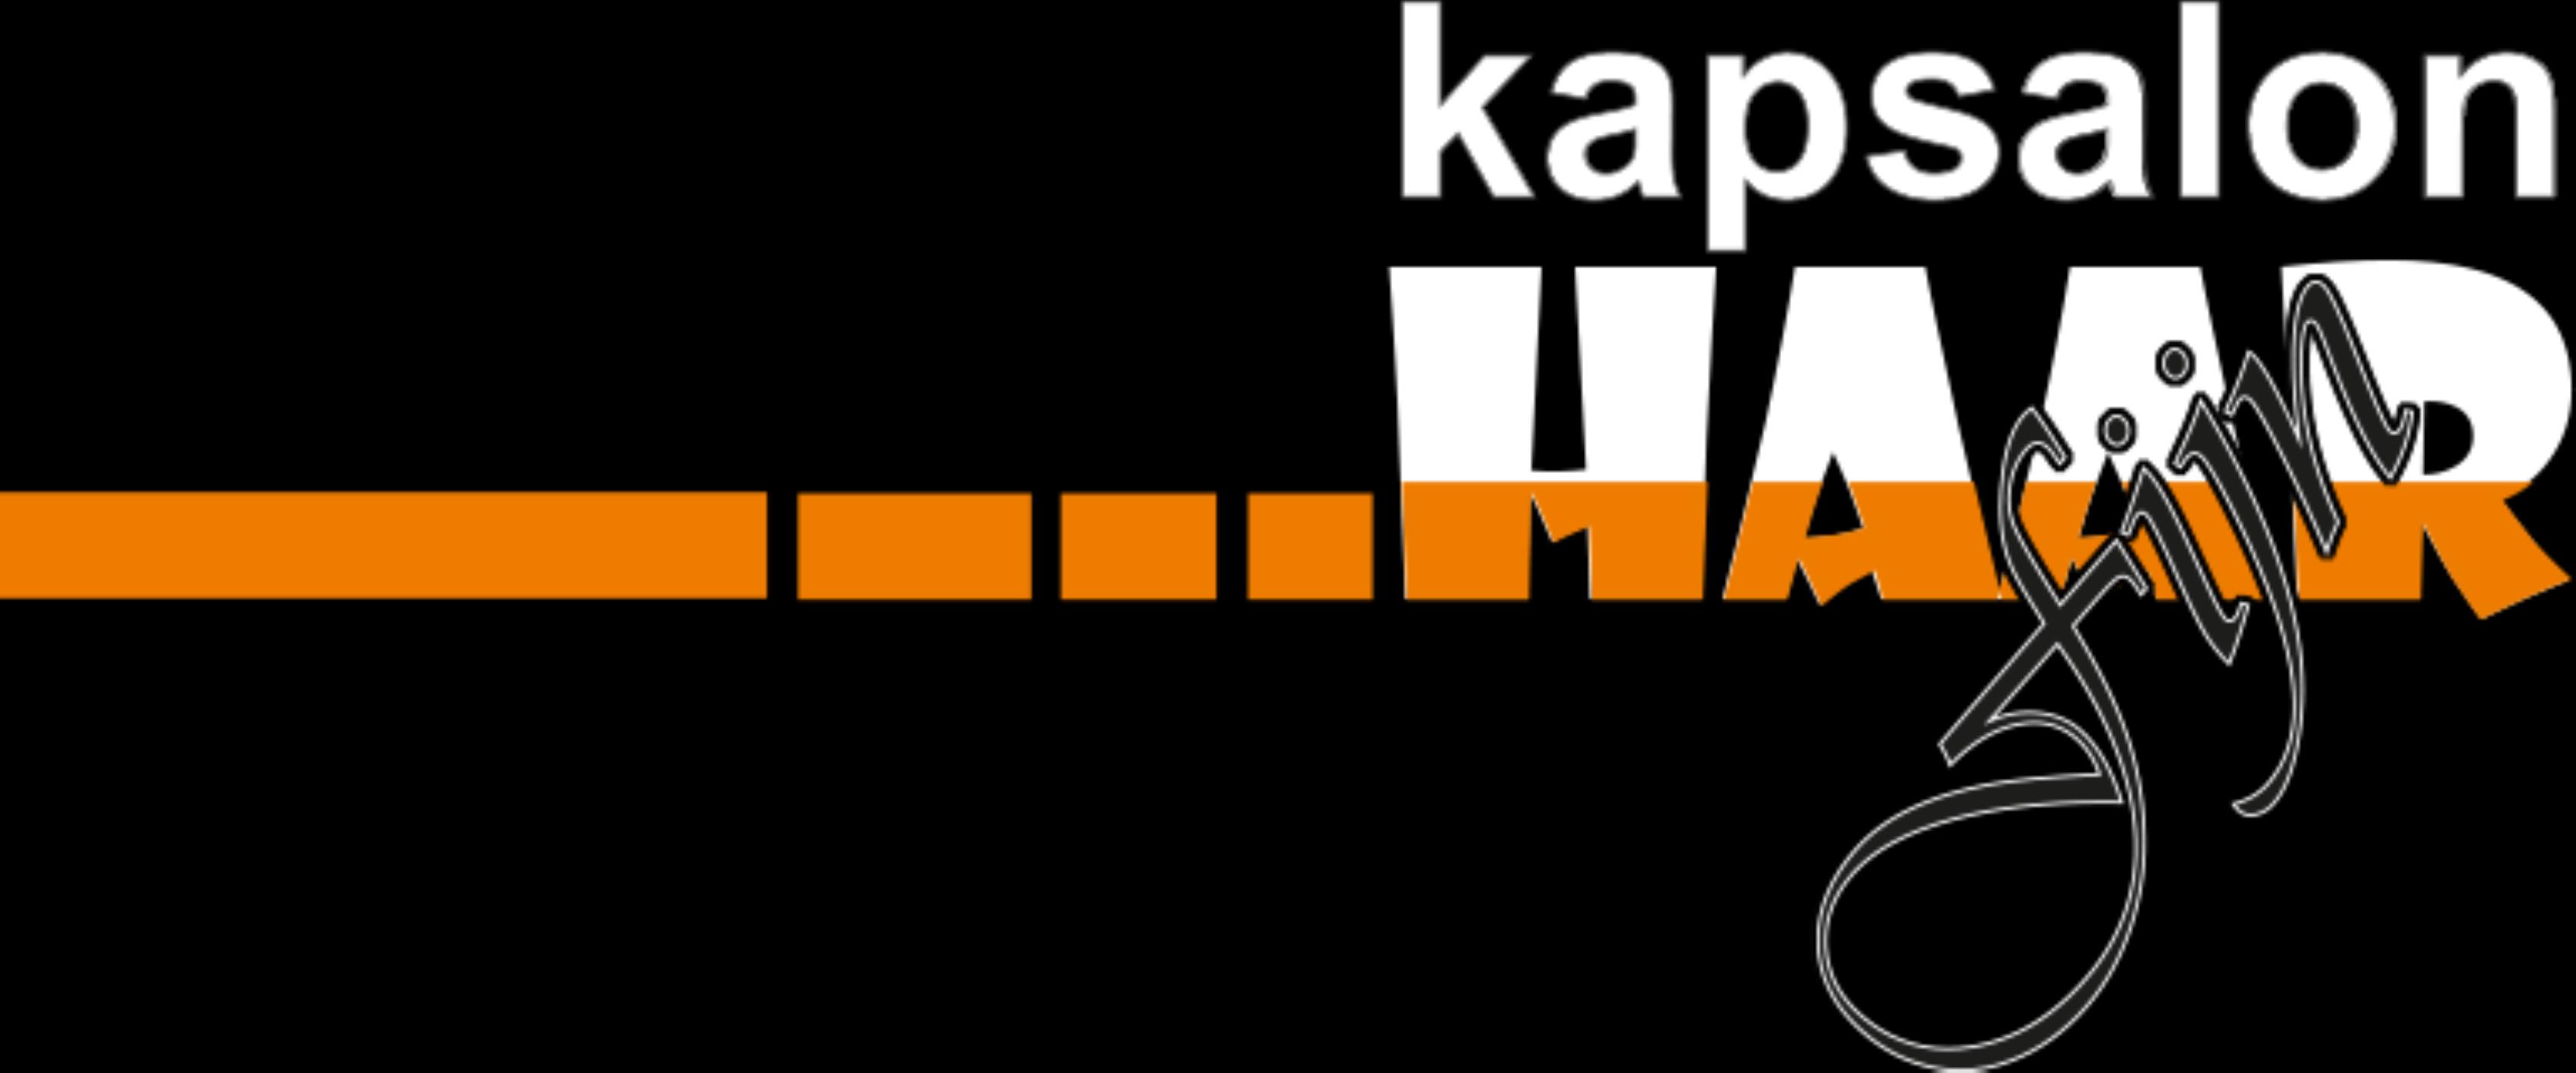 Logo Kapsalon Haarfijn